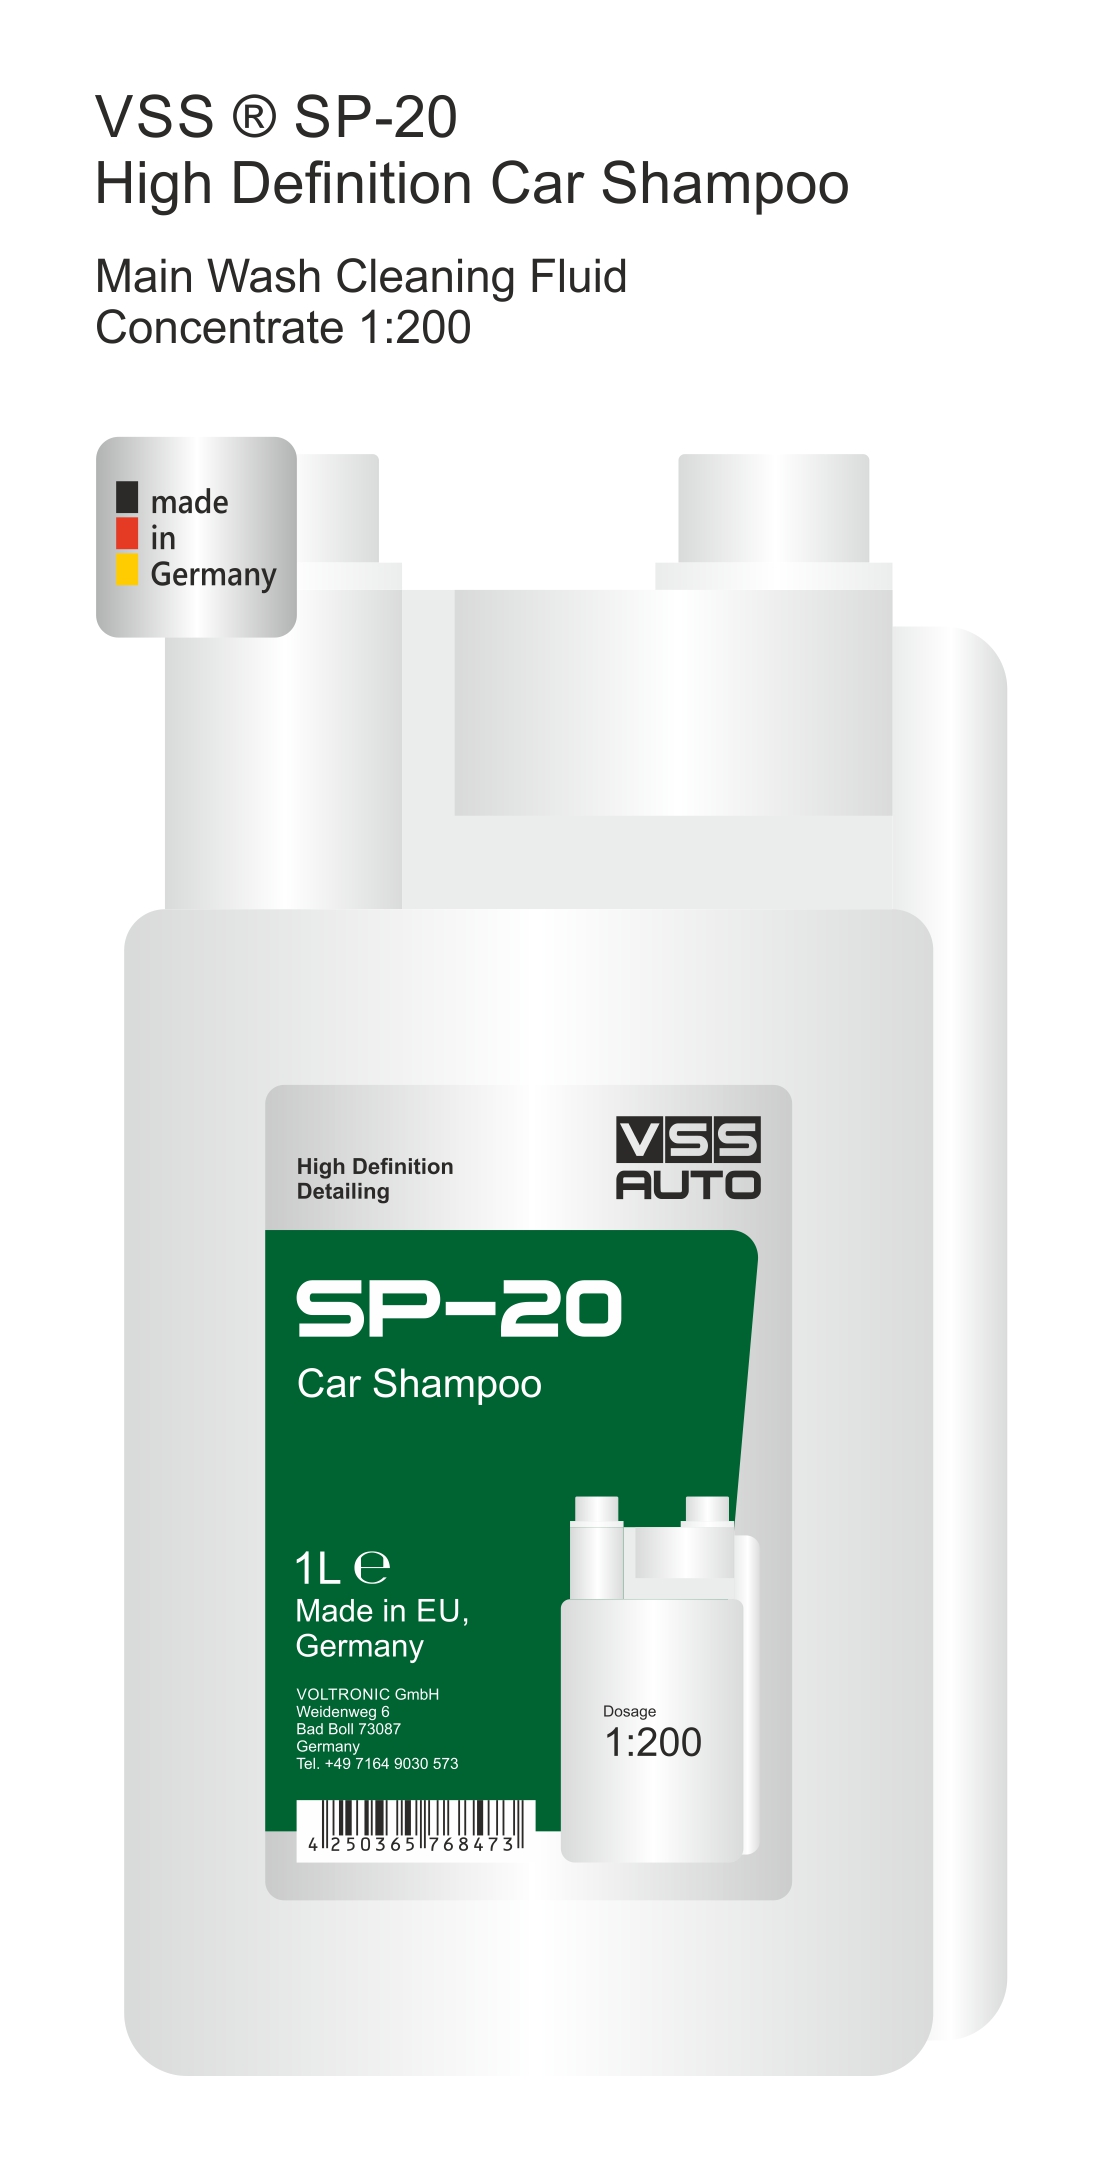 VSS SP-20 Car Shampoo (main wash)